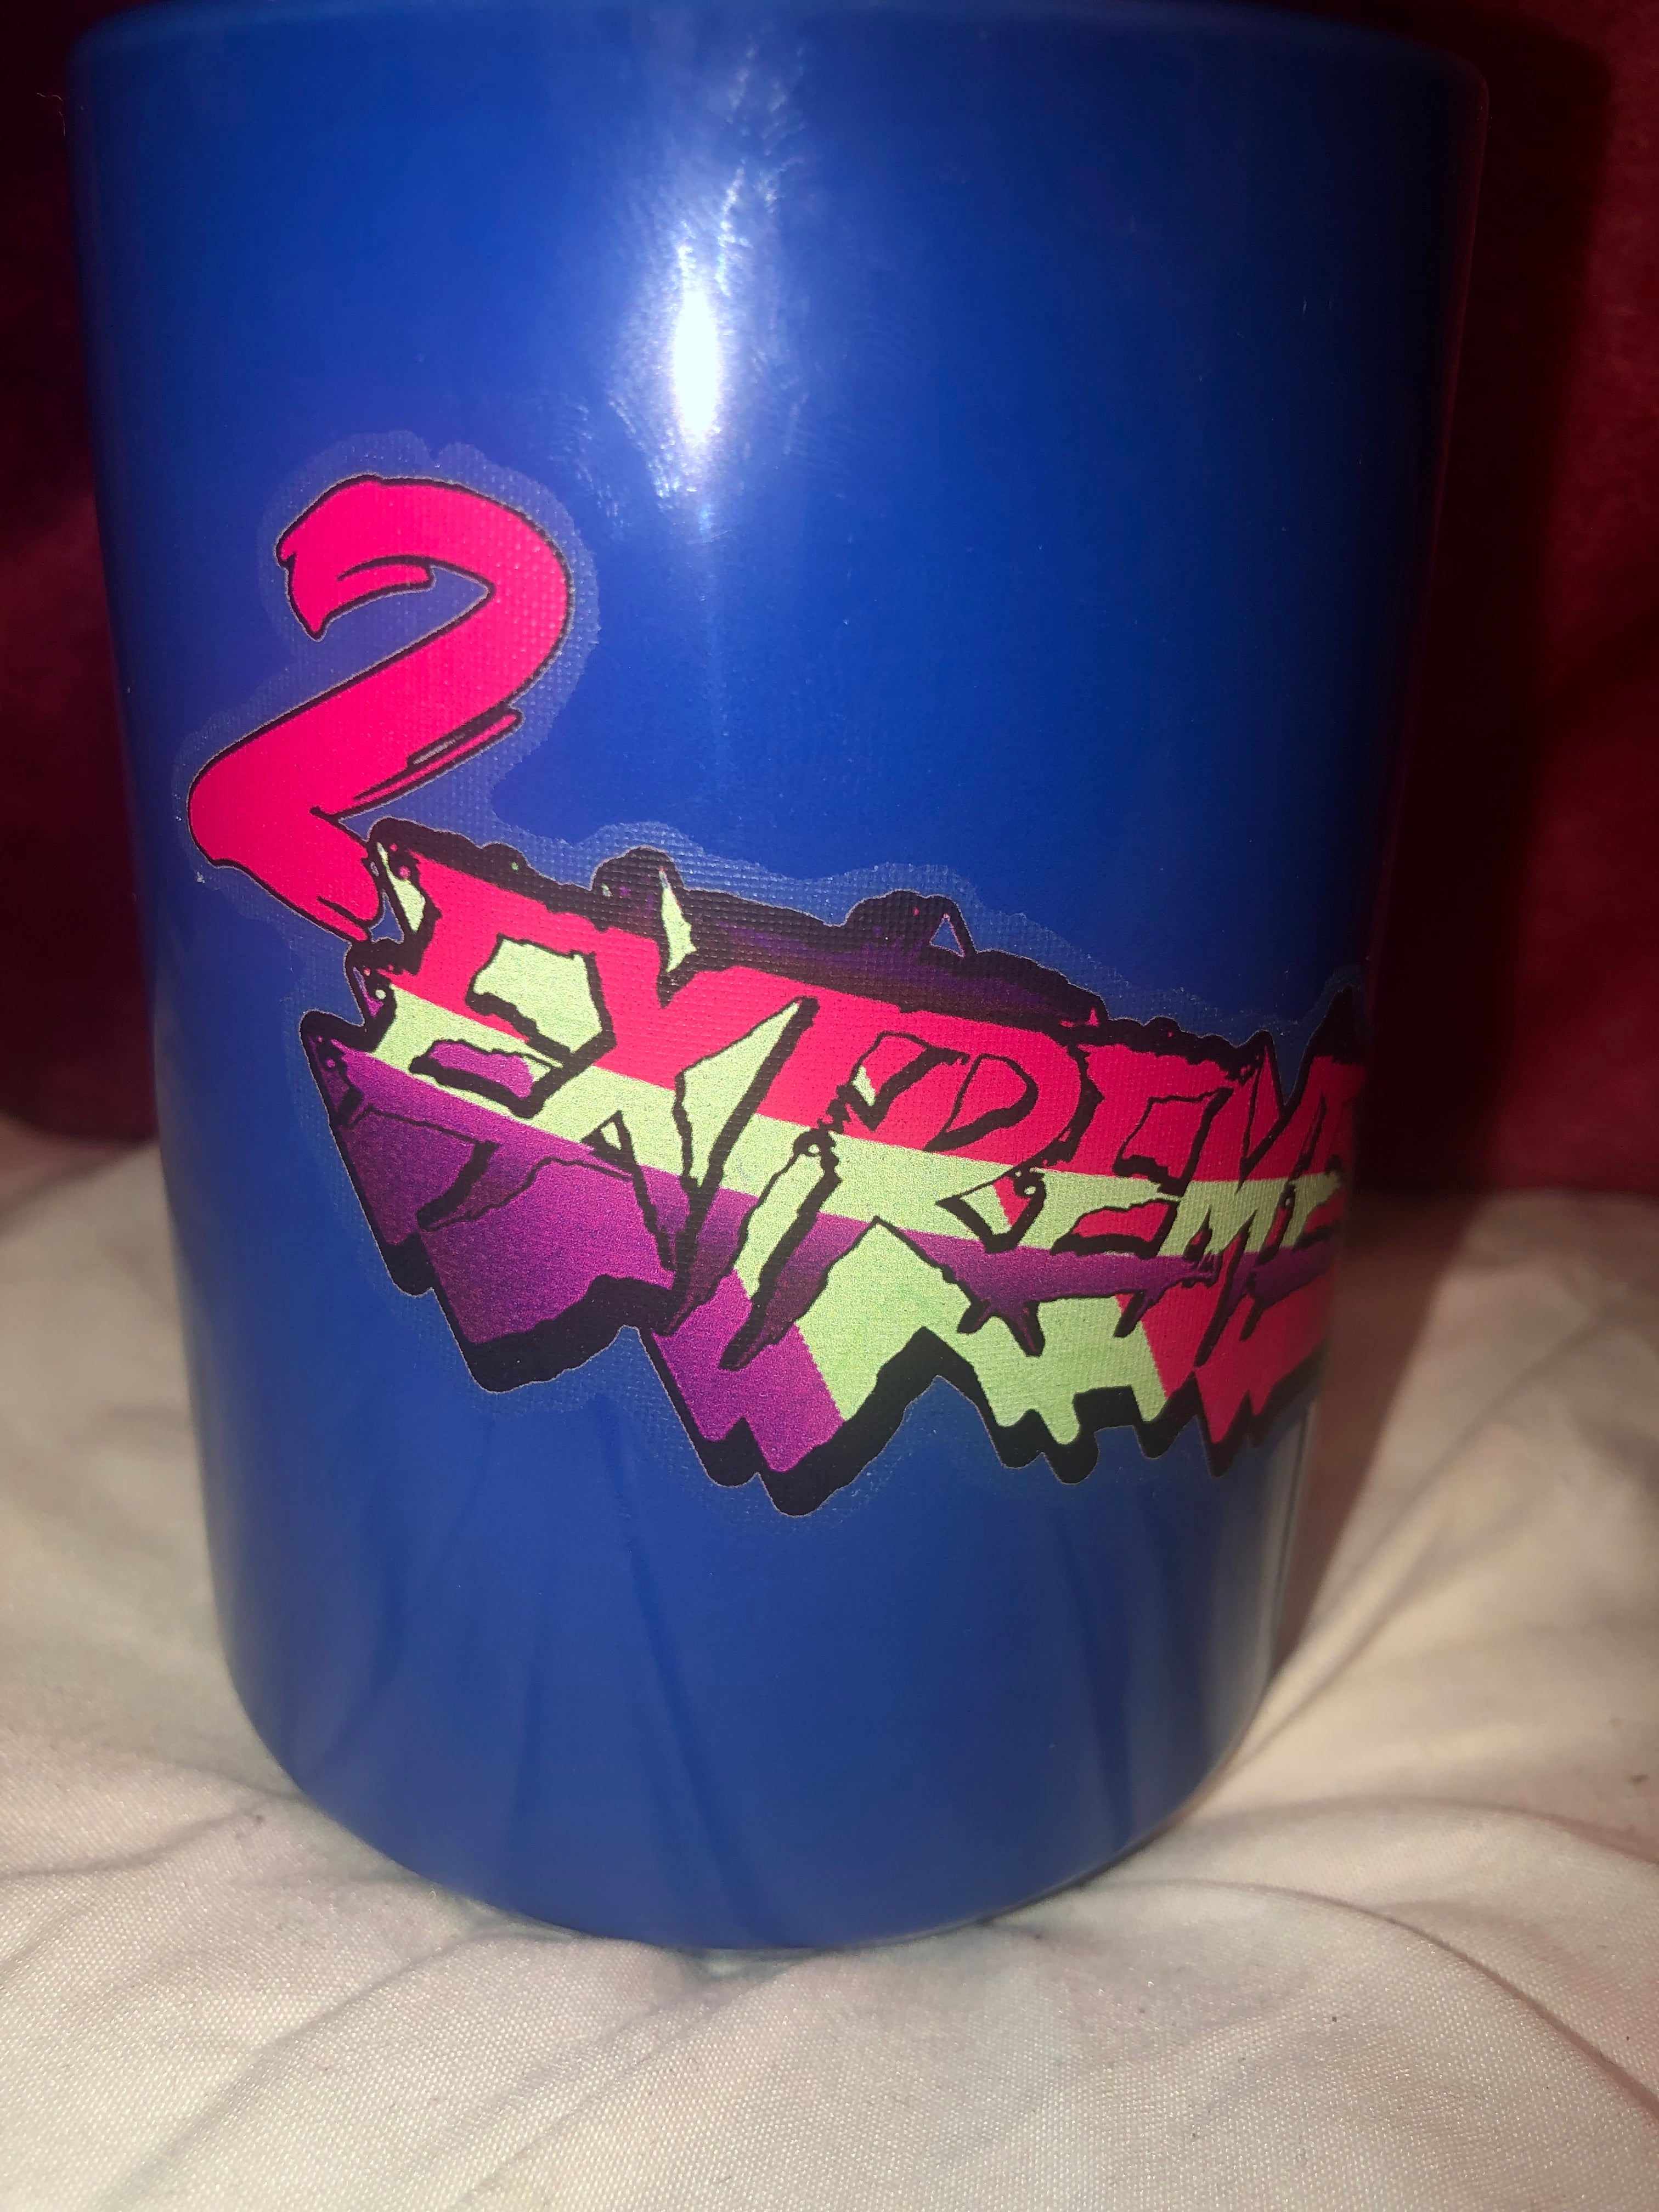 2Extreme- Blue mugs